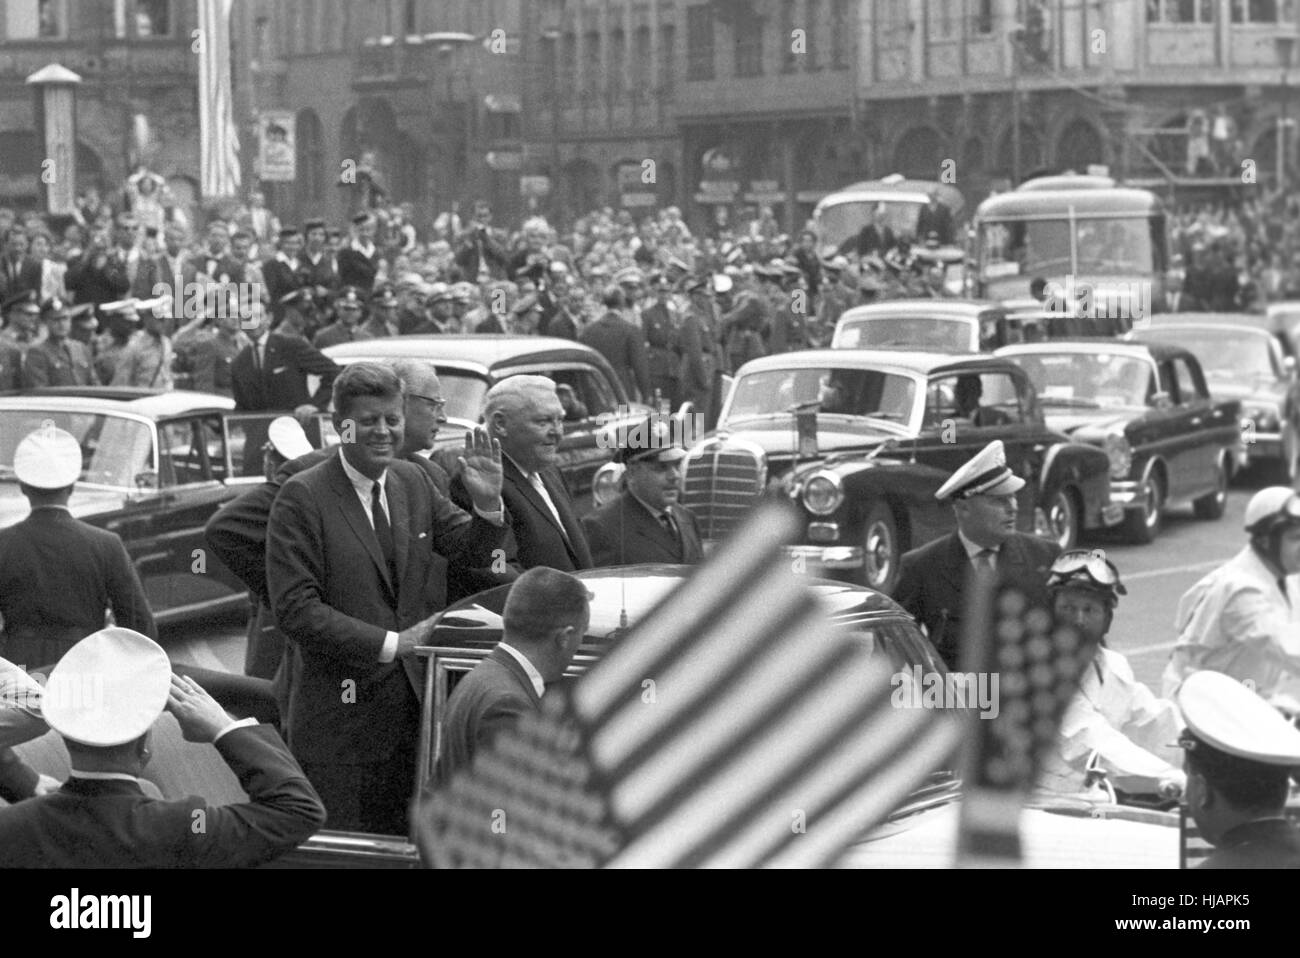 Président américain John F. Kennedy lors de sa visite dans la région de Frankfurt am Main le 25 juin 1963 de l'hôtel de ville Roemer à la Paulskirche historique. À côté de Kennedy vice-chancelier allemand Ludwig Erhard et le premier ministre de l'Hesse Georg August Zinn (M). Banque D'Images